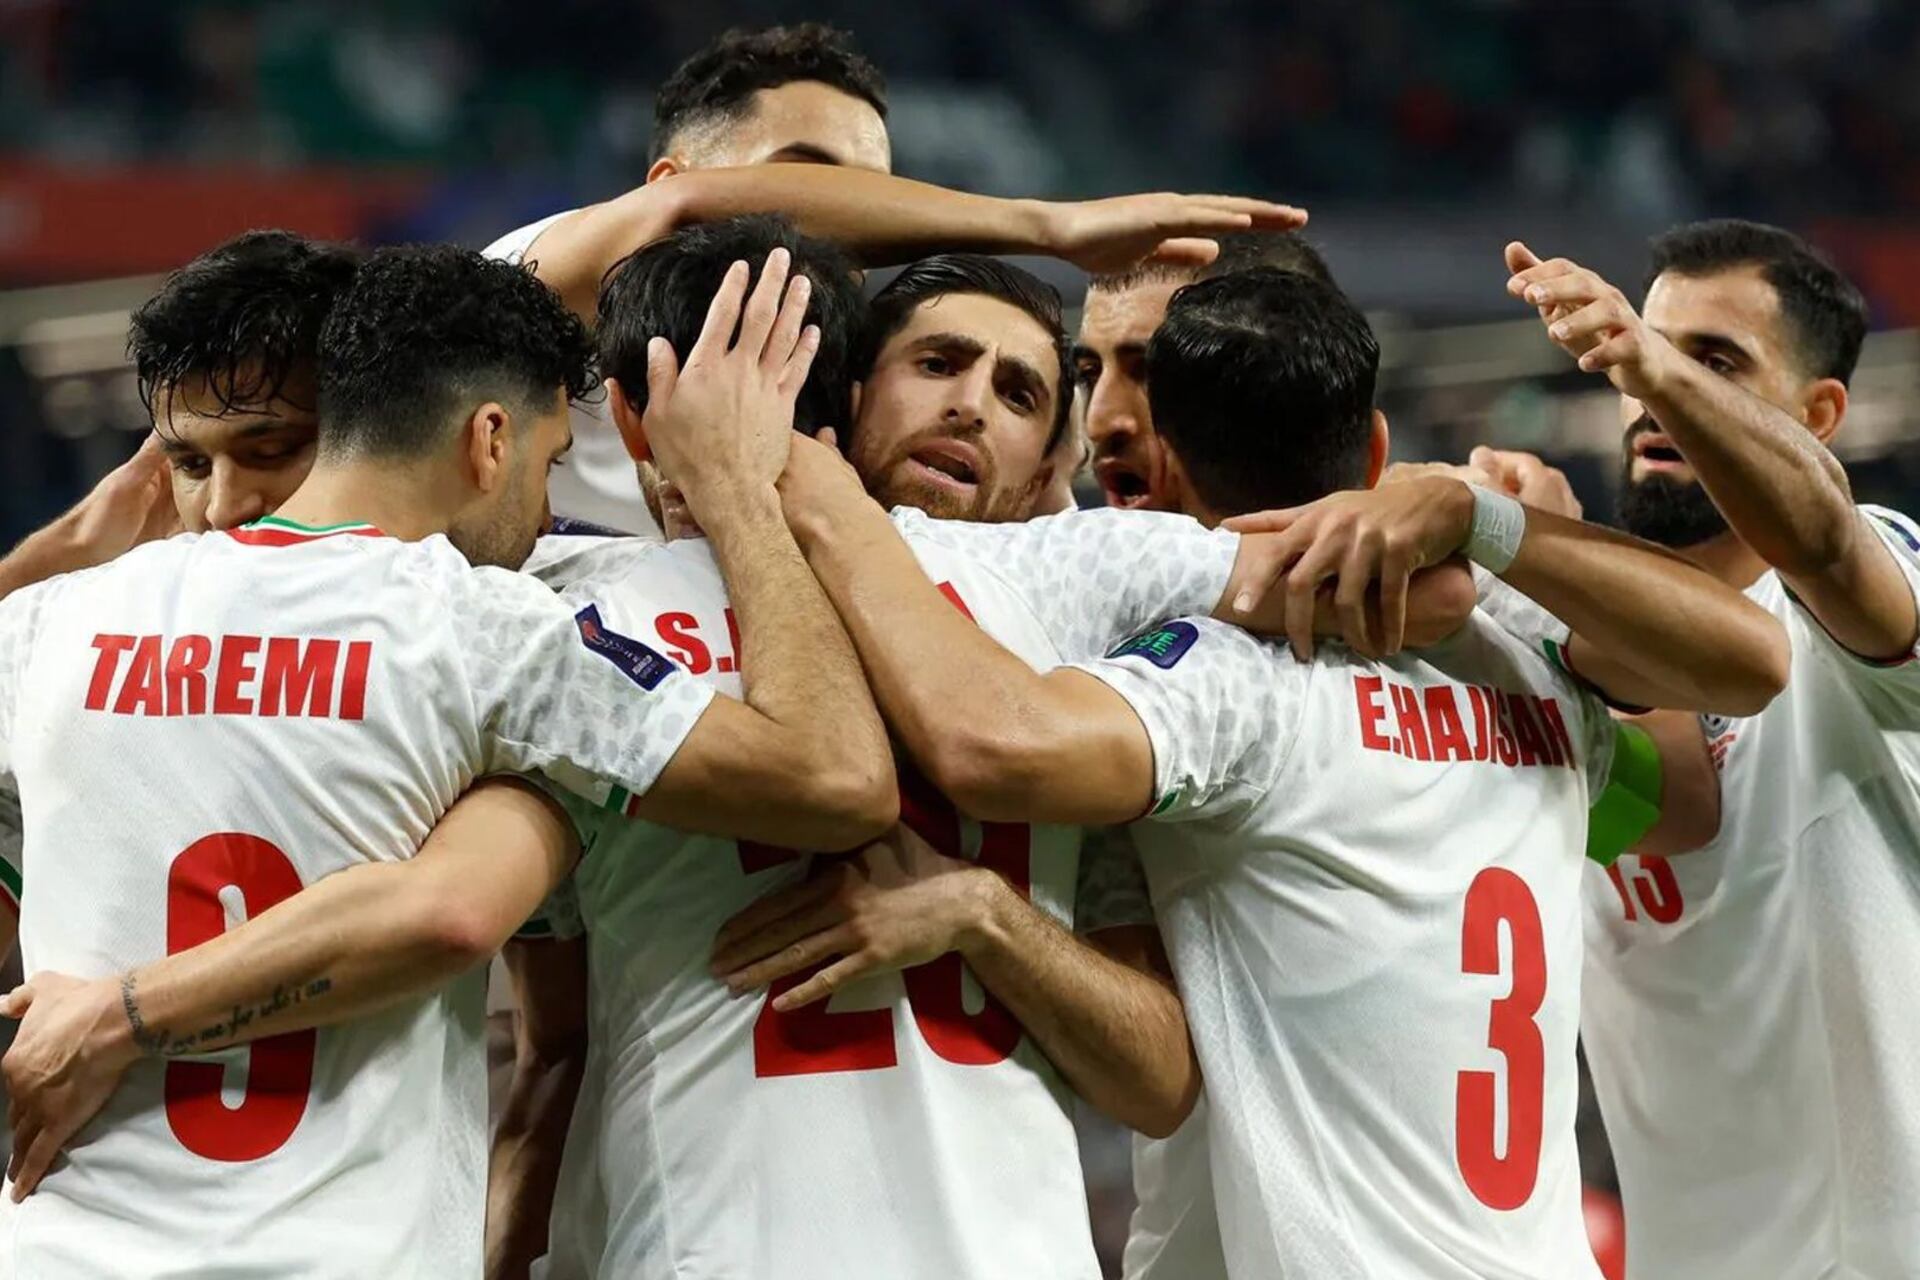 El fútbol los une, Irán muestra solidaridad con Palestina antes de una cómoda victoria